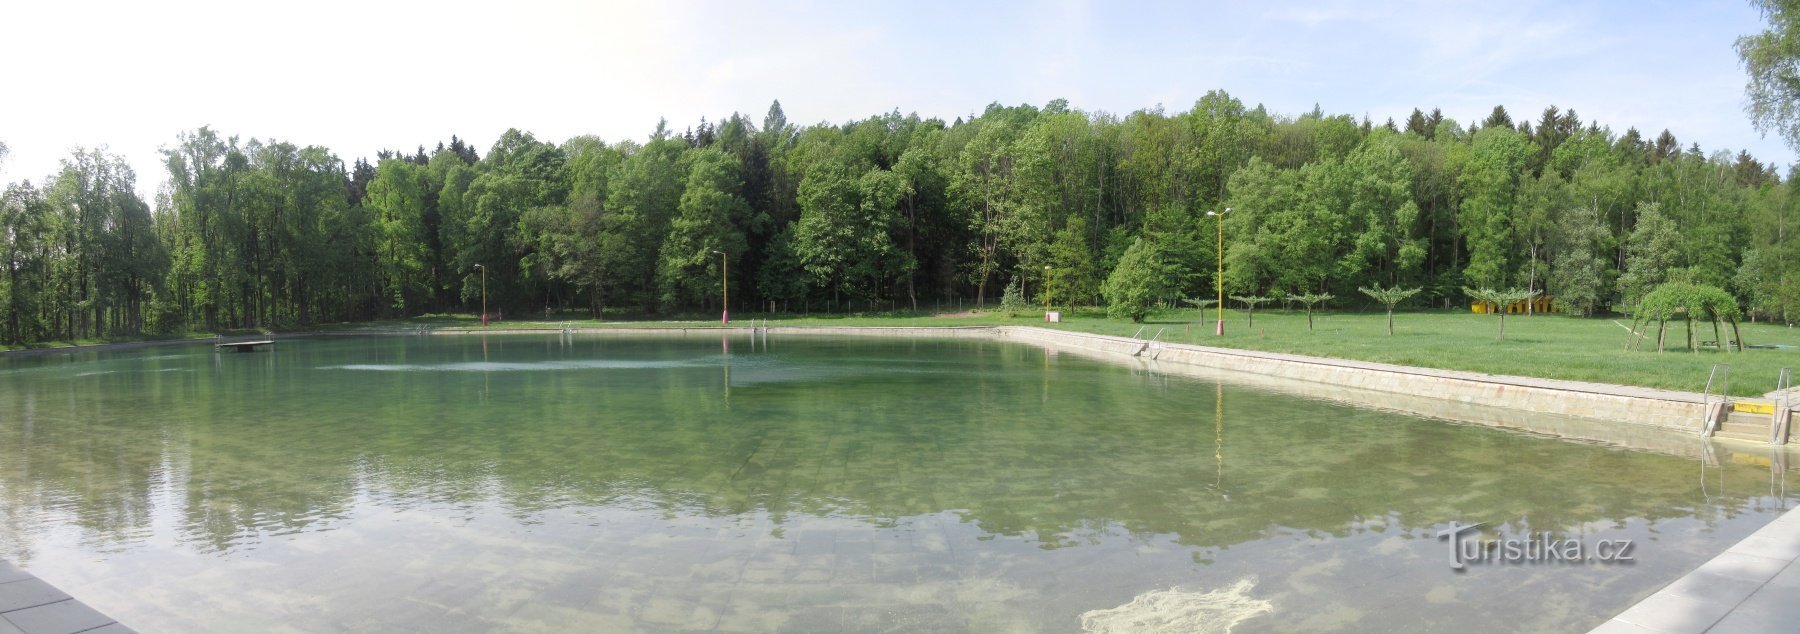 Osada Dachovy - Hồ bơi Dachova, ban đầu là Dachova Sun Bath